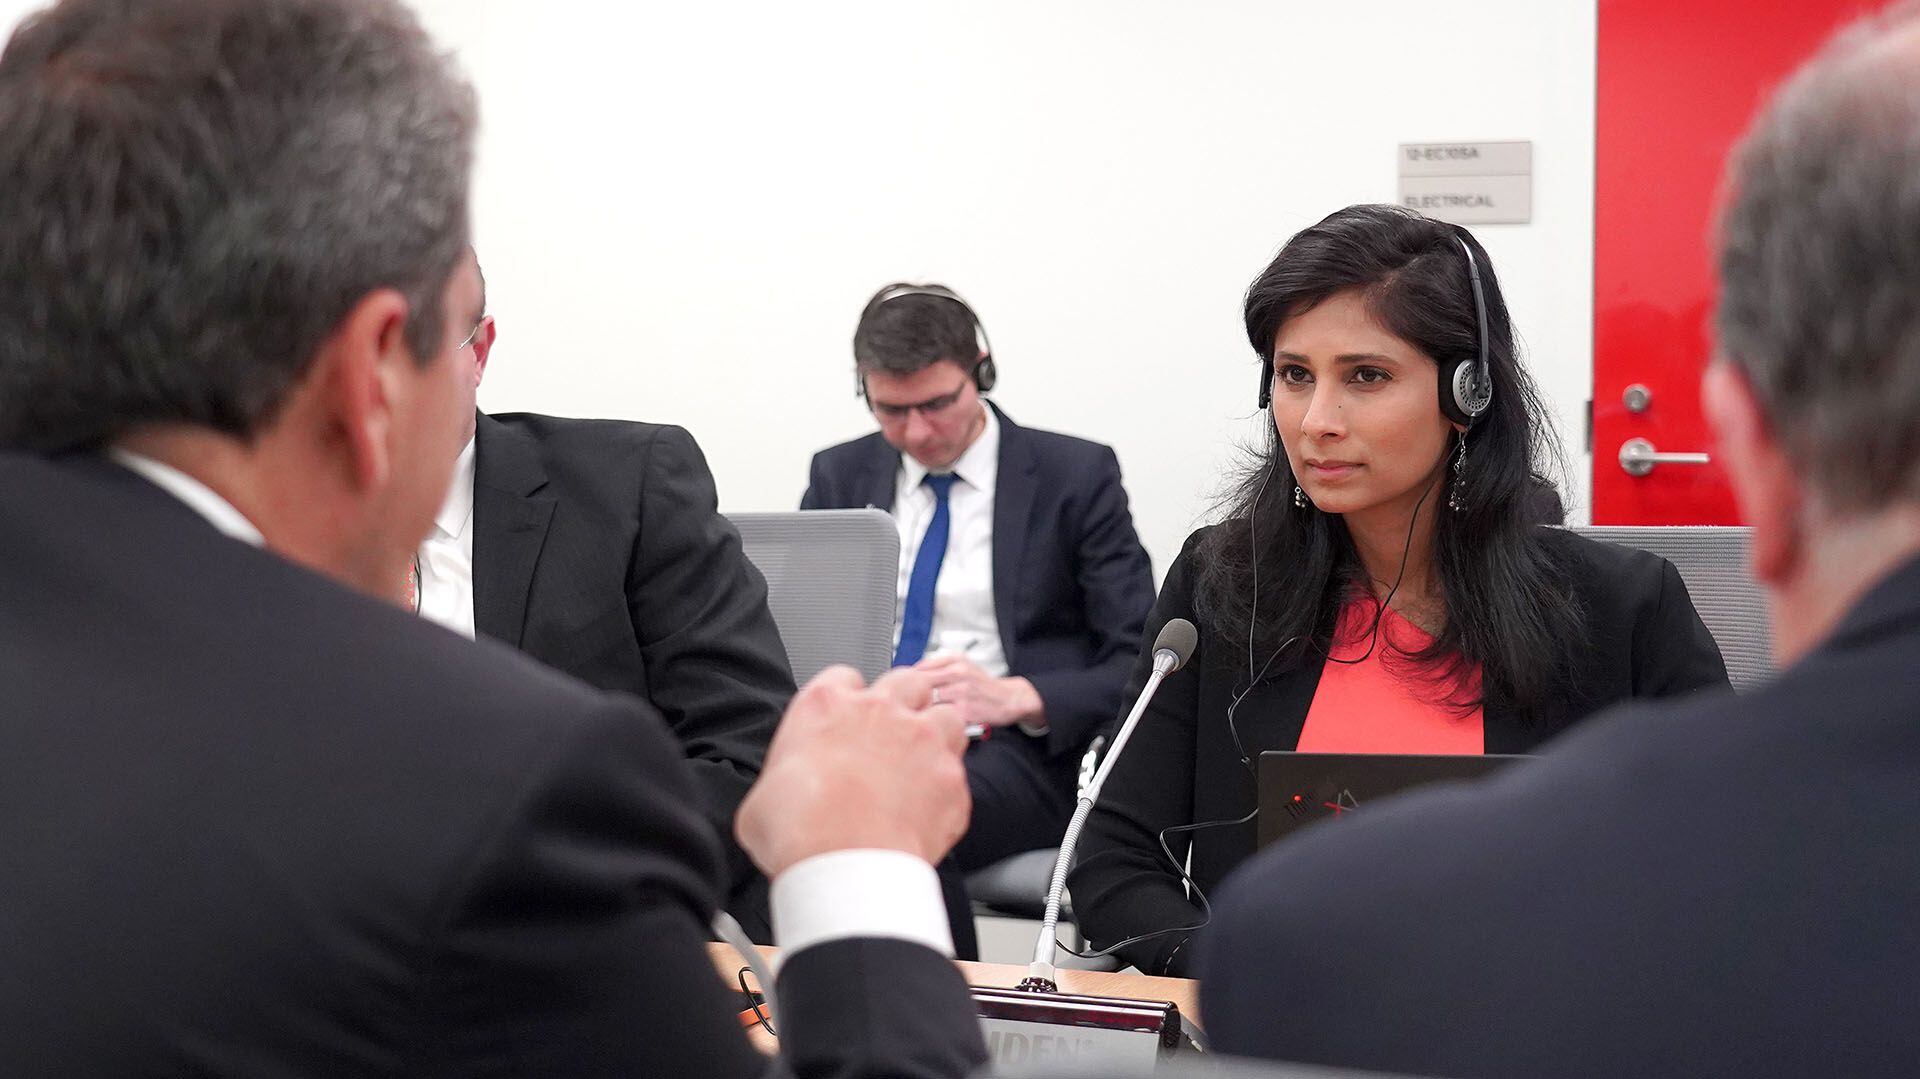 Massa, de espaldas, en uno de sus enfáticos intercambios con Gita Gopinath, la subdirectora del FMI
Foto NA